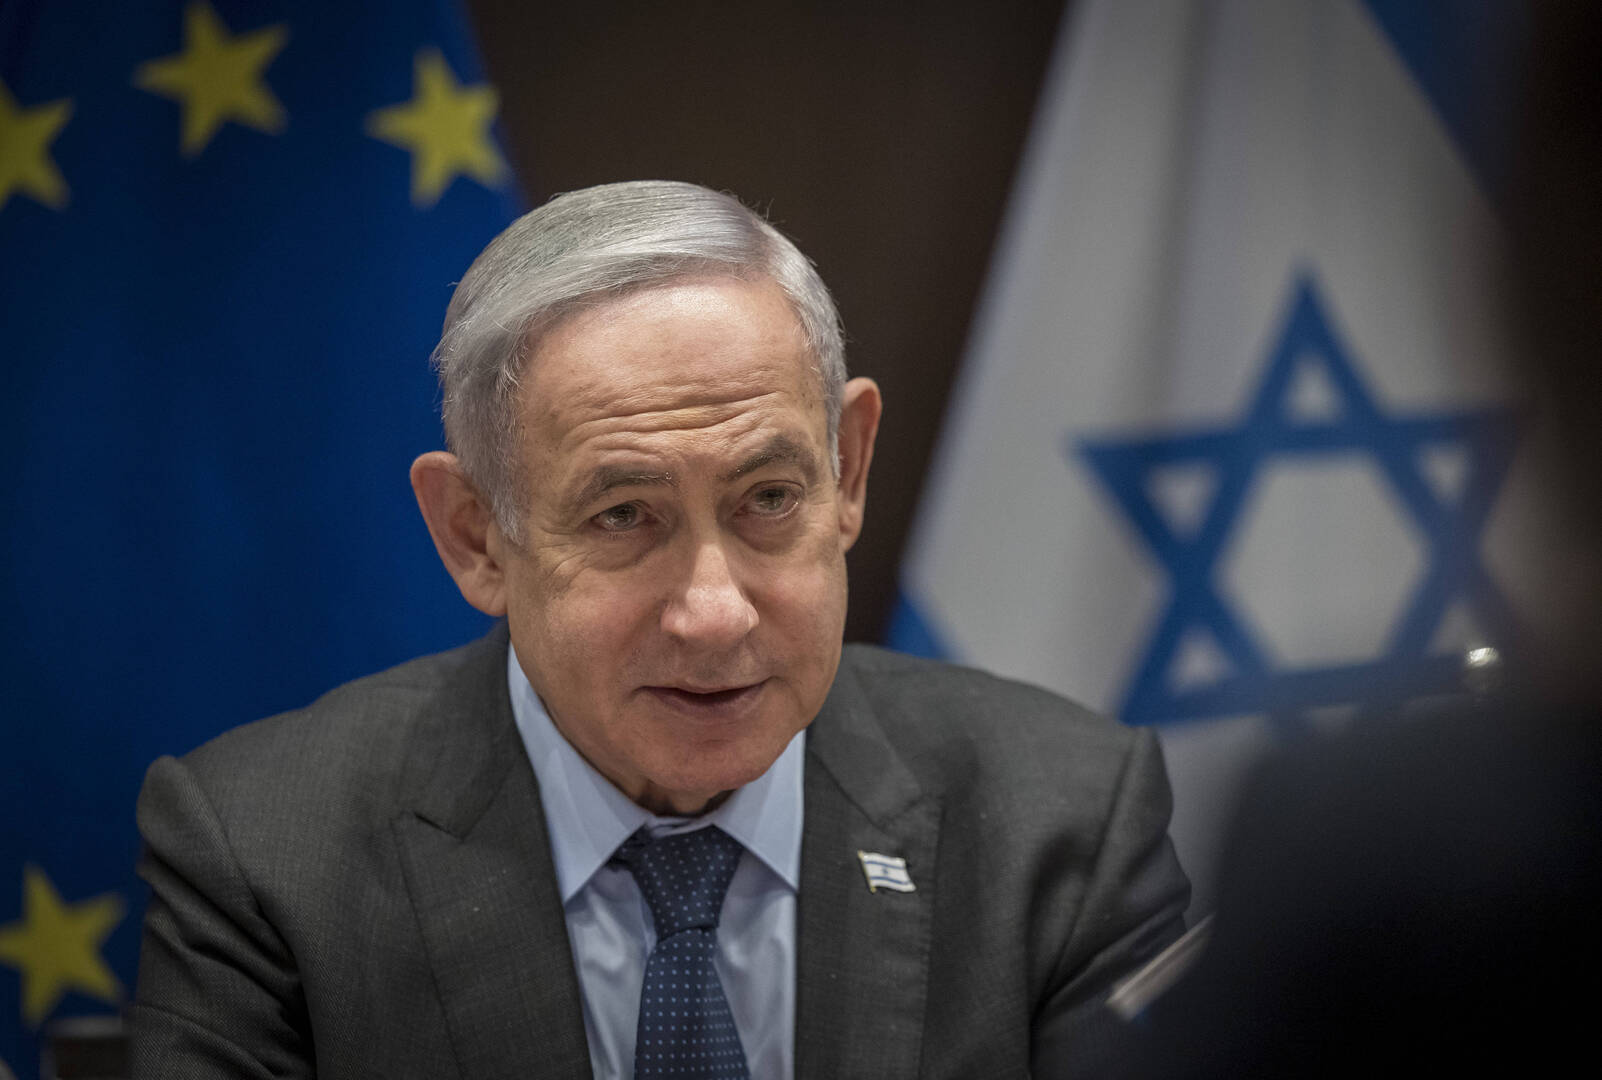 الحكومة الإسرائيلية تتبنّى قرارا يحظر الاعتراف أحادي الجانب بدولة فلسطين